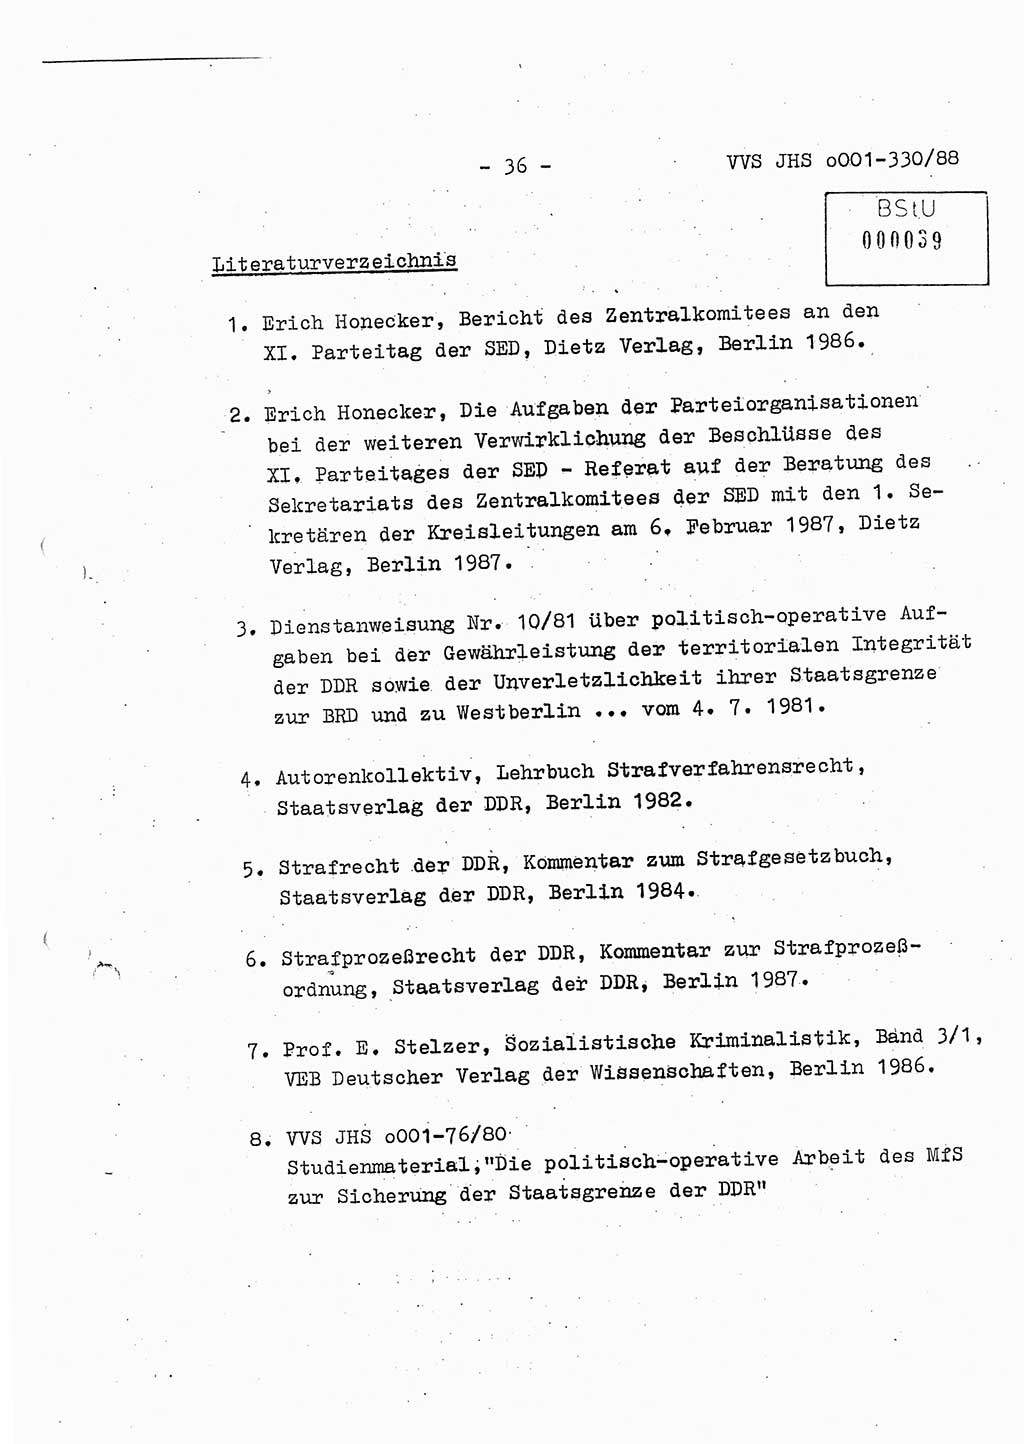 Diplomarbeit Offiziersschüler Thomas Mühle (HA Ⅸ/6), Ministerium für Staatssicherheit (MfS) [Deutsche Demokratische Republik (DDR)], Juristische Hochschule (JHS), Vertrauliche Verschlußsache (VVS) o001-330/88, Potsdam 1988, Seite 36 (Dipl.-Arb. MfS DDR JHS VVS o001-330/88 1988, S. 36)